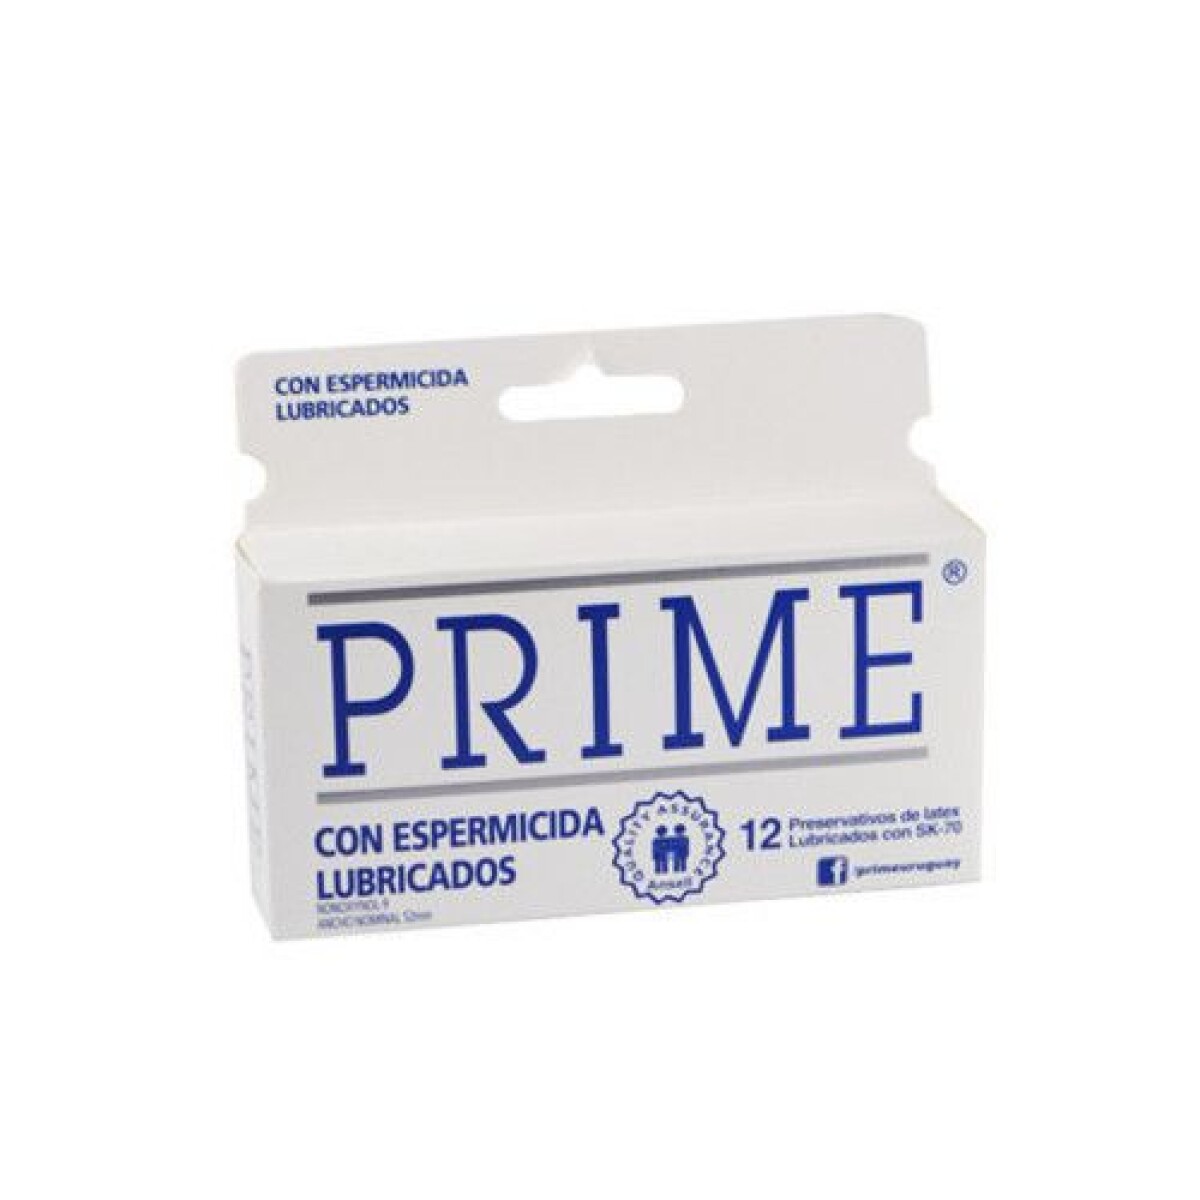 Preservativos Prime x12 - Con espermicida lubricados 